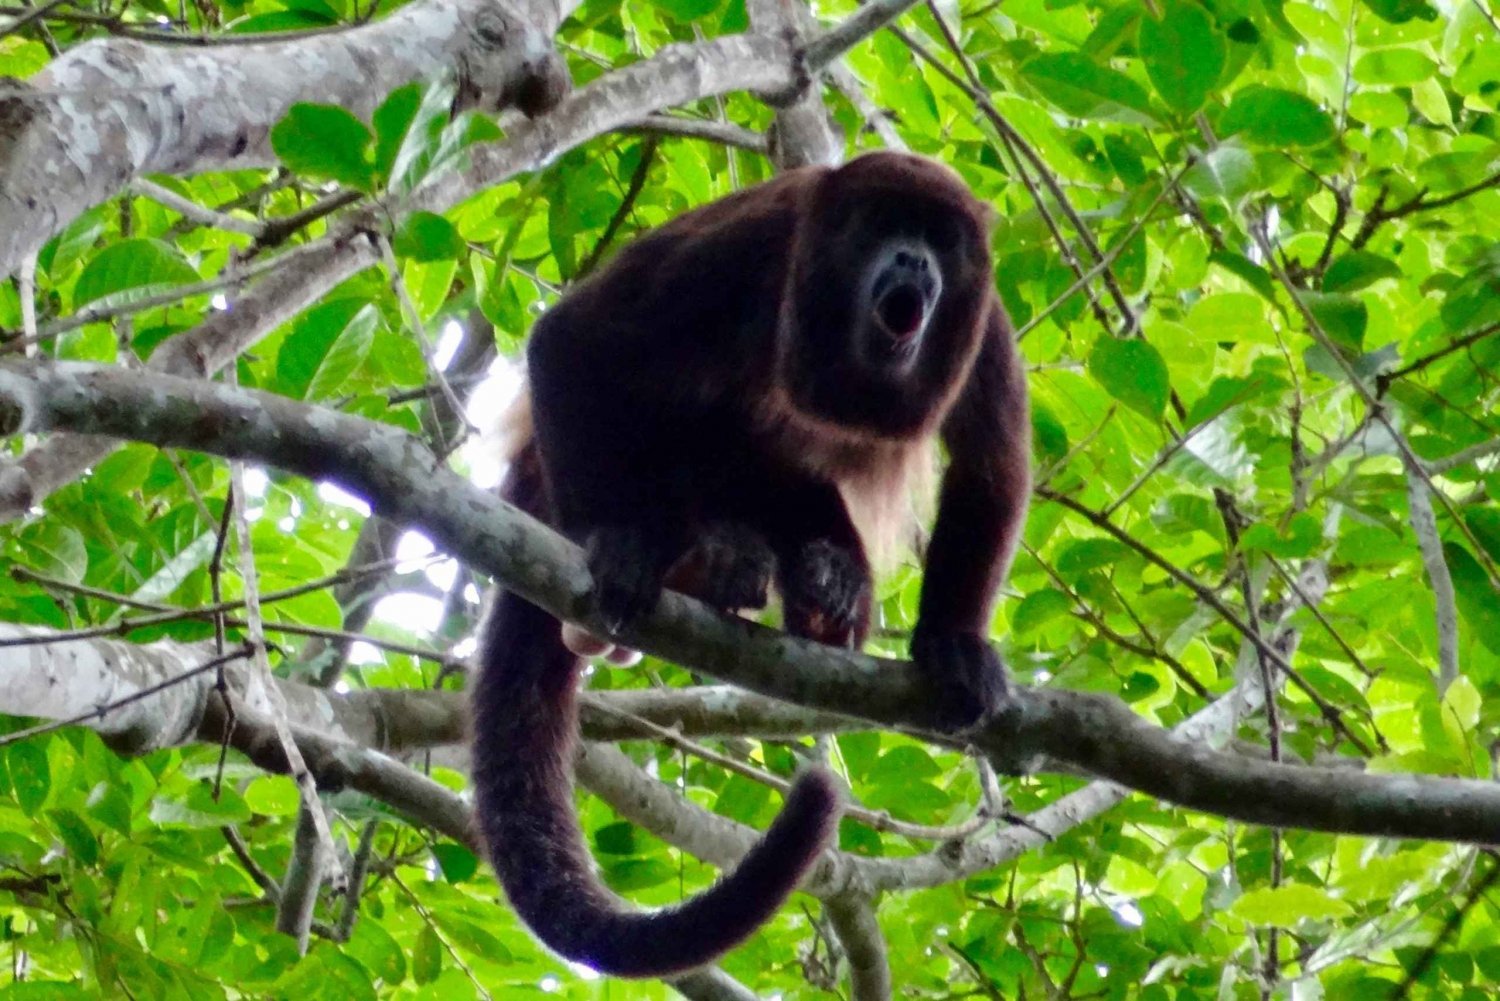 Excursión de un día desde Guayaquil al Sendero del Mono Aullador, Granja de Cacao